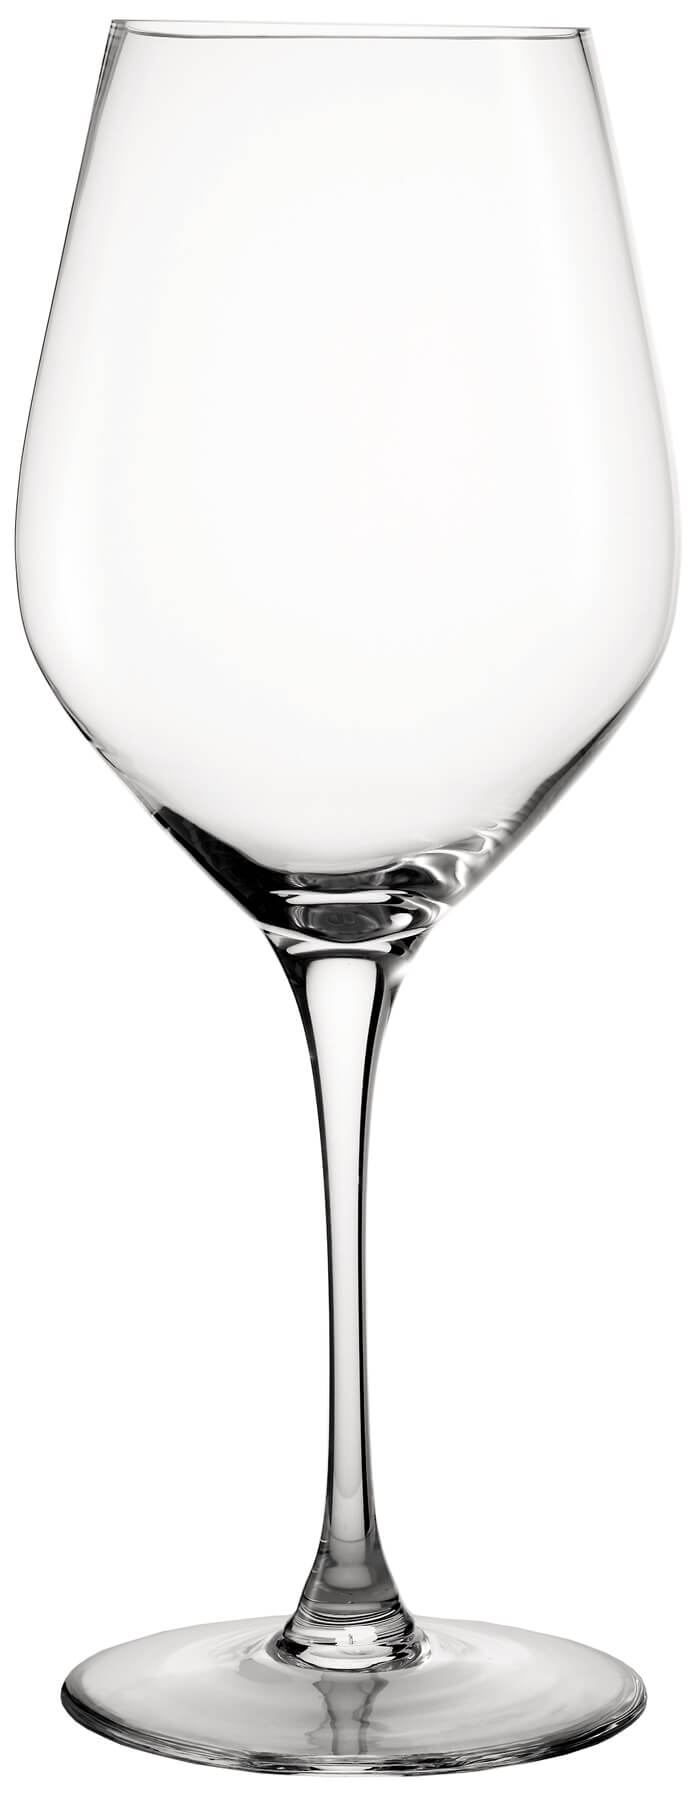 Jumbo wine glass, Spiegelau - 15l (1 pc.)